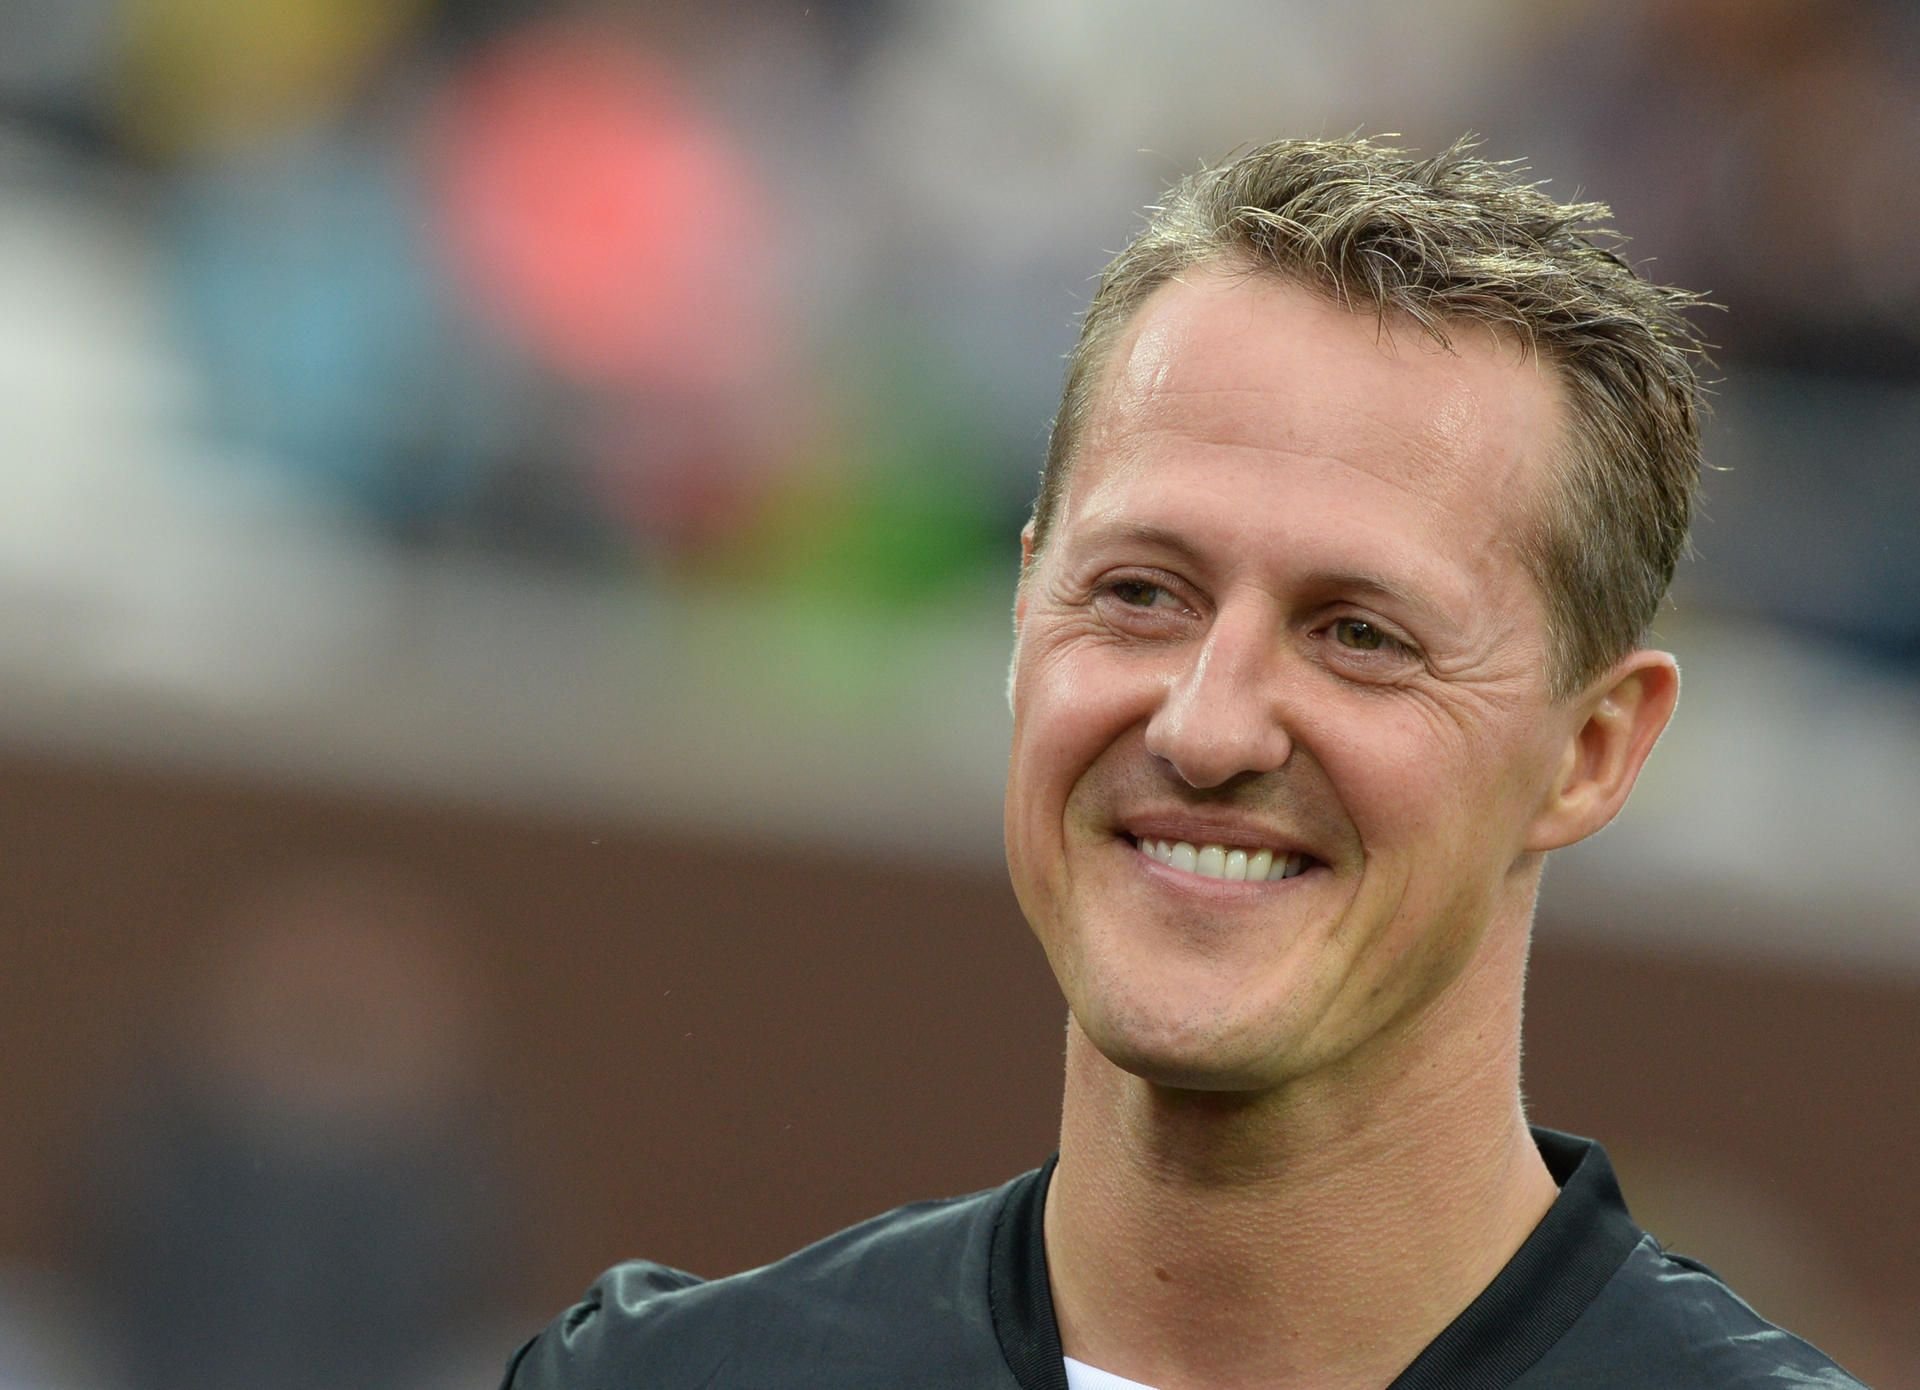 Michael Schumacher : Michael Schumacher News aktuell: #keepfightingmichael  wird zu Stiftung